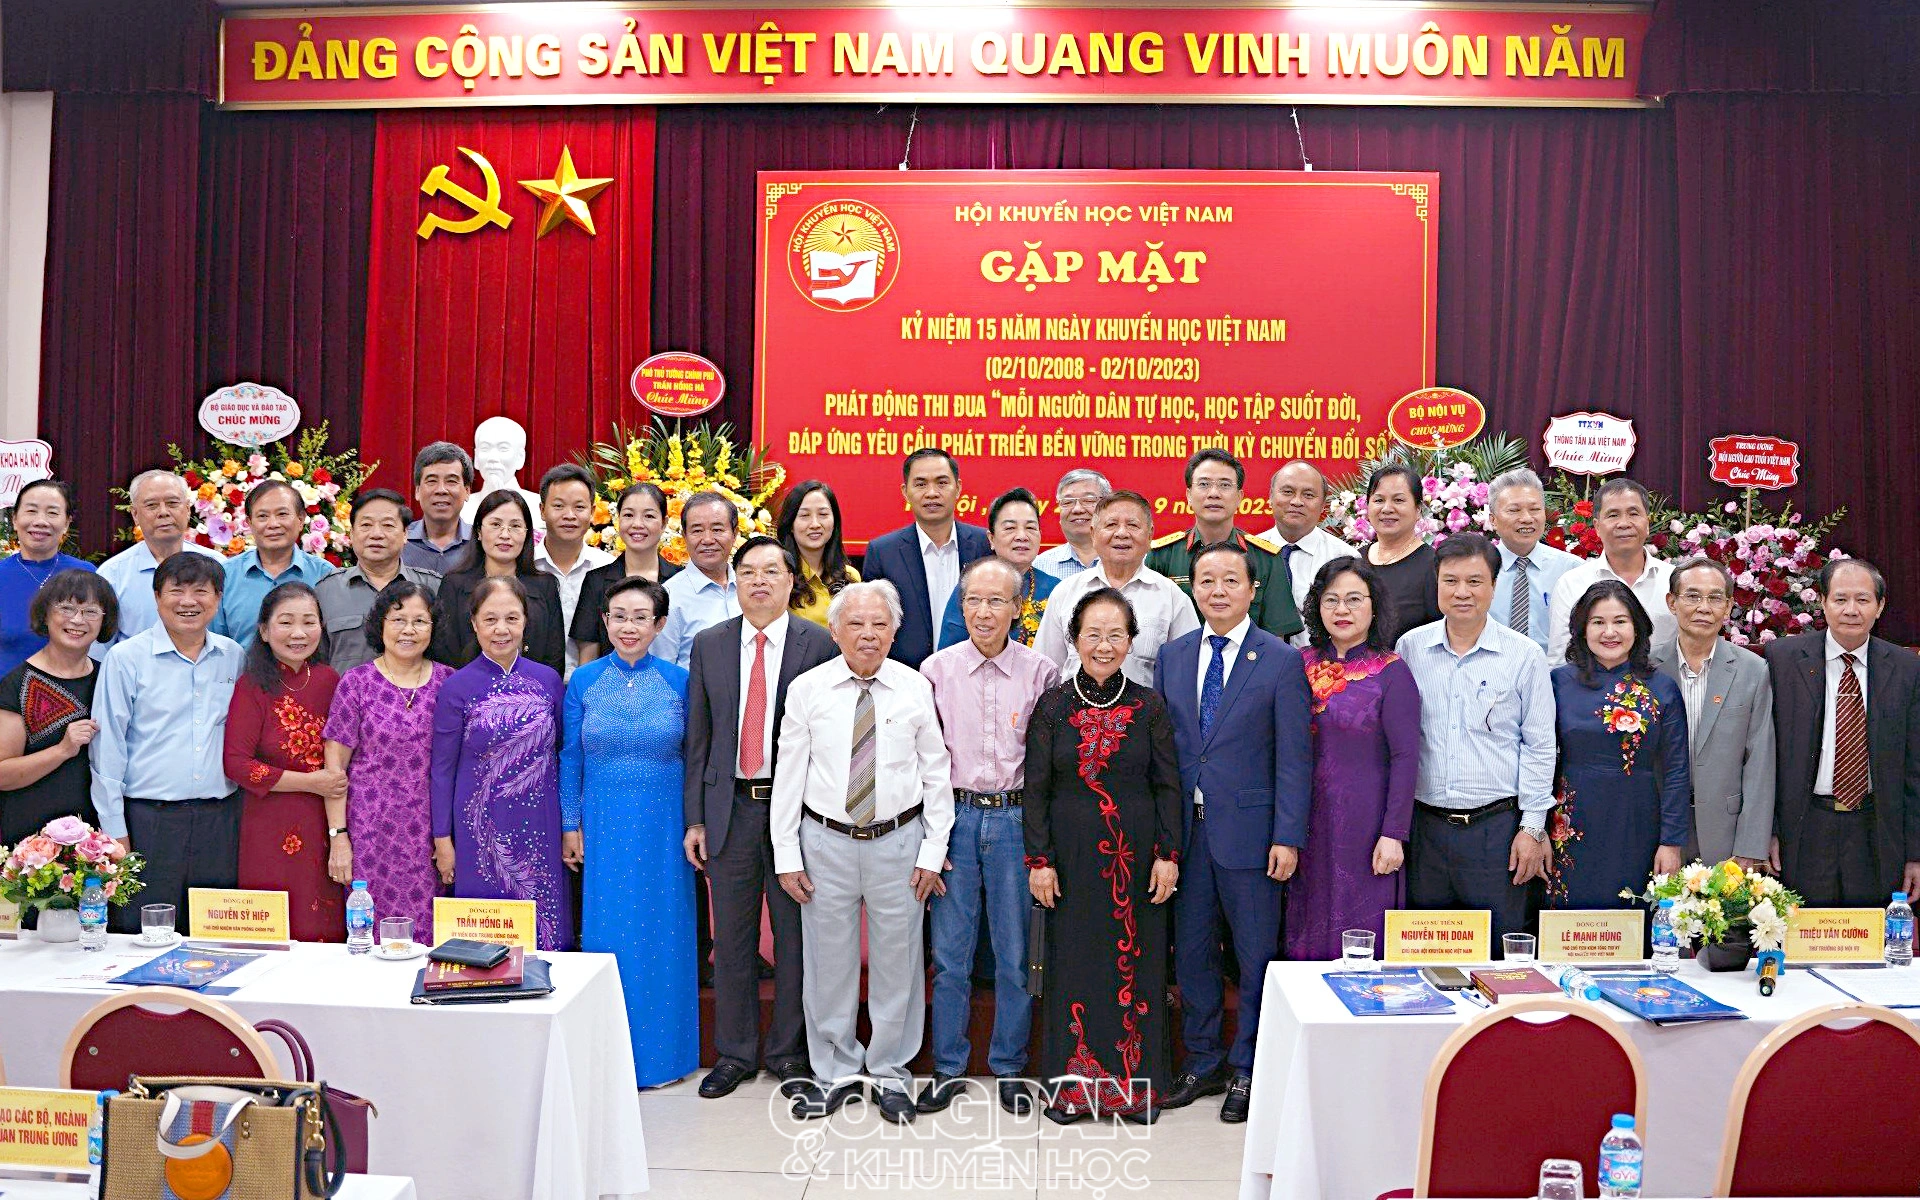 Gặp mặt chào mừng Ngày 15 năm Ngày Khuyến học Việt Nam - Ảnh 10.